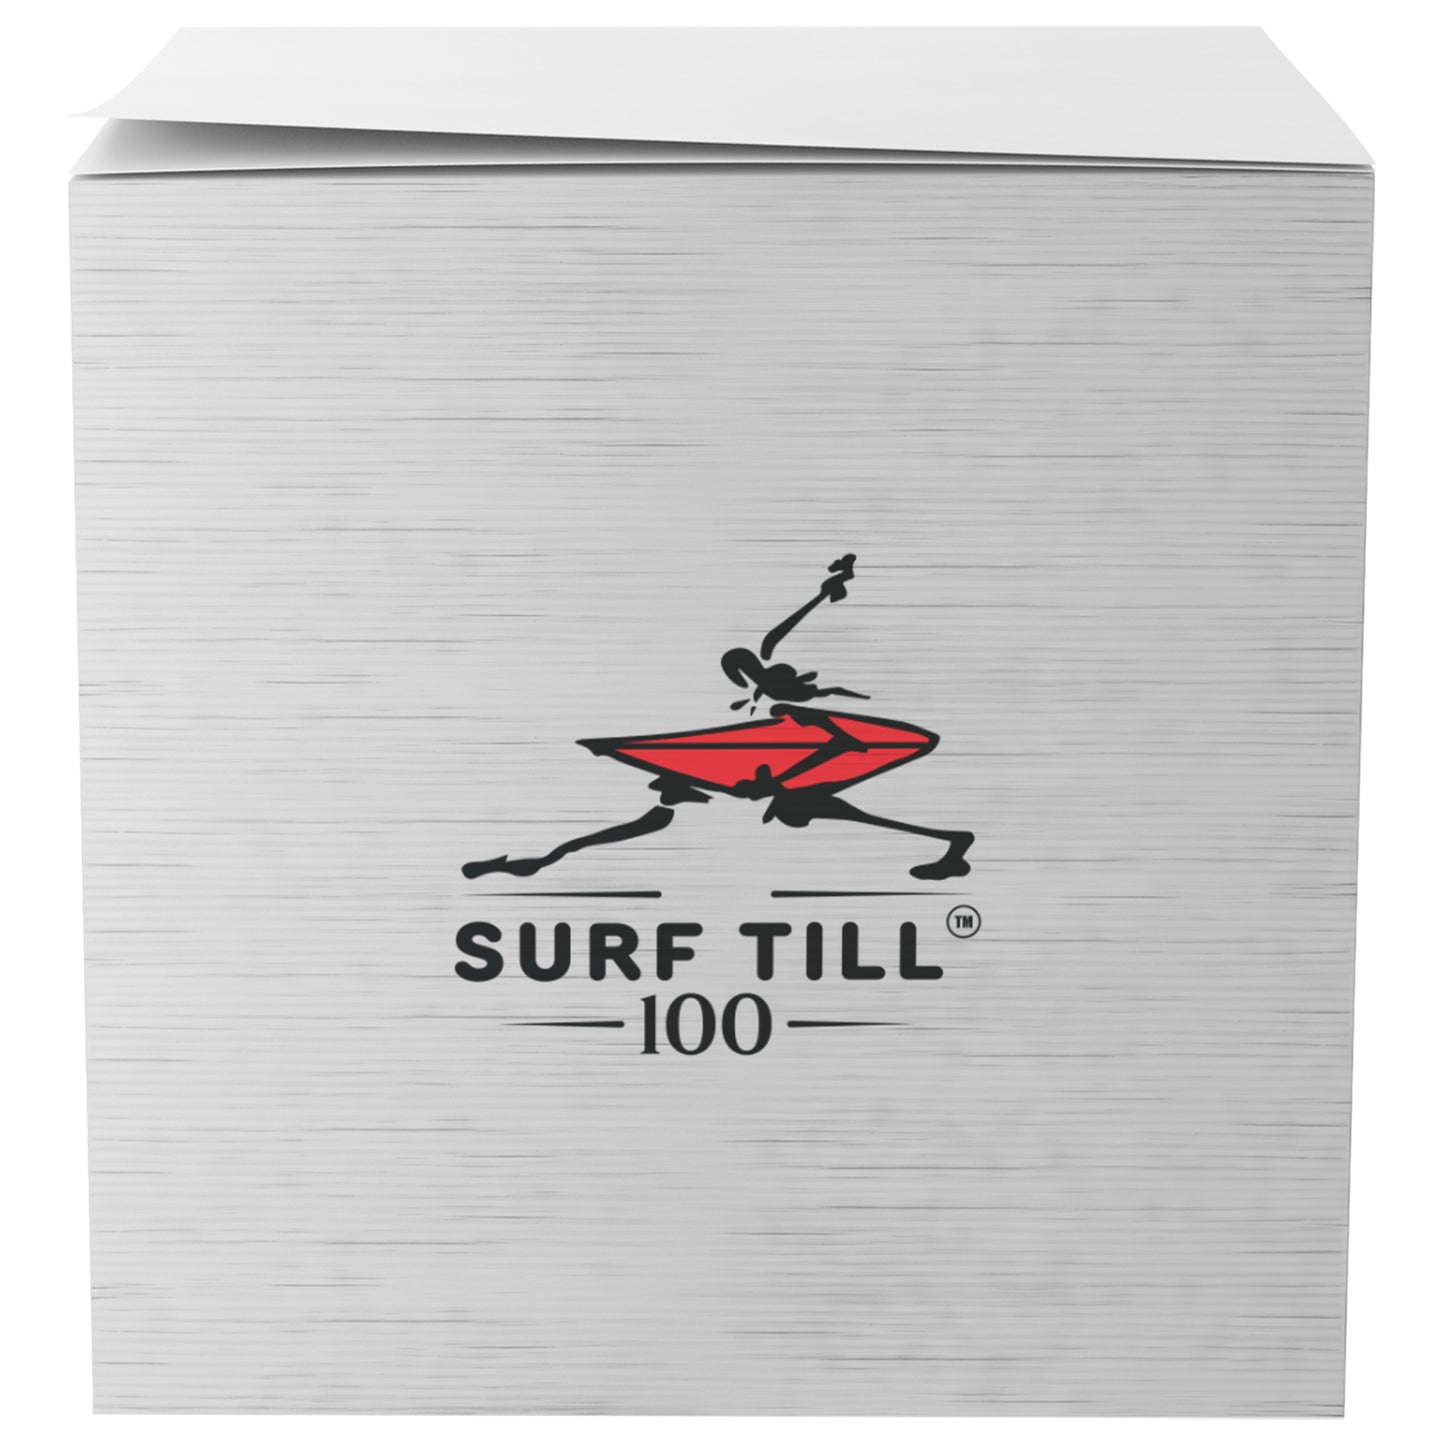 Surf Till 100 3M Post-it® Notes